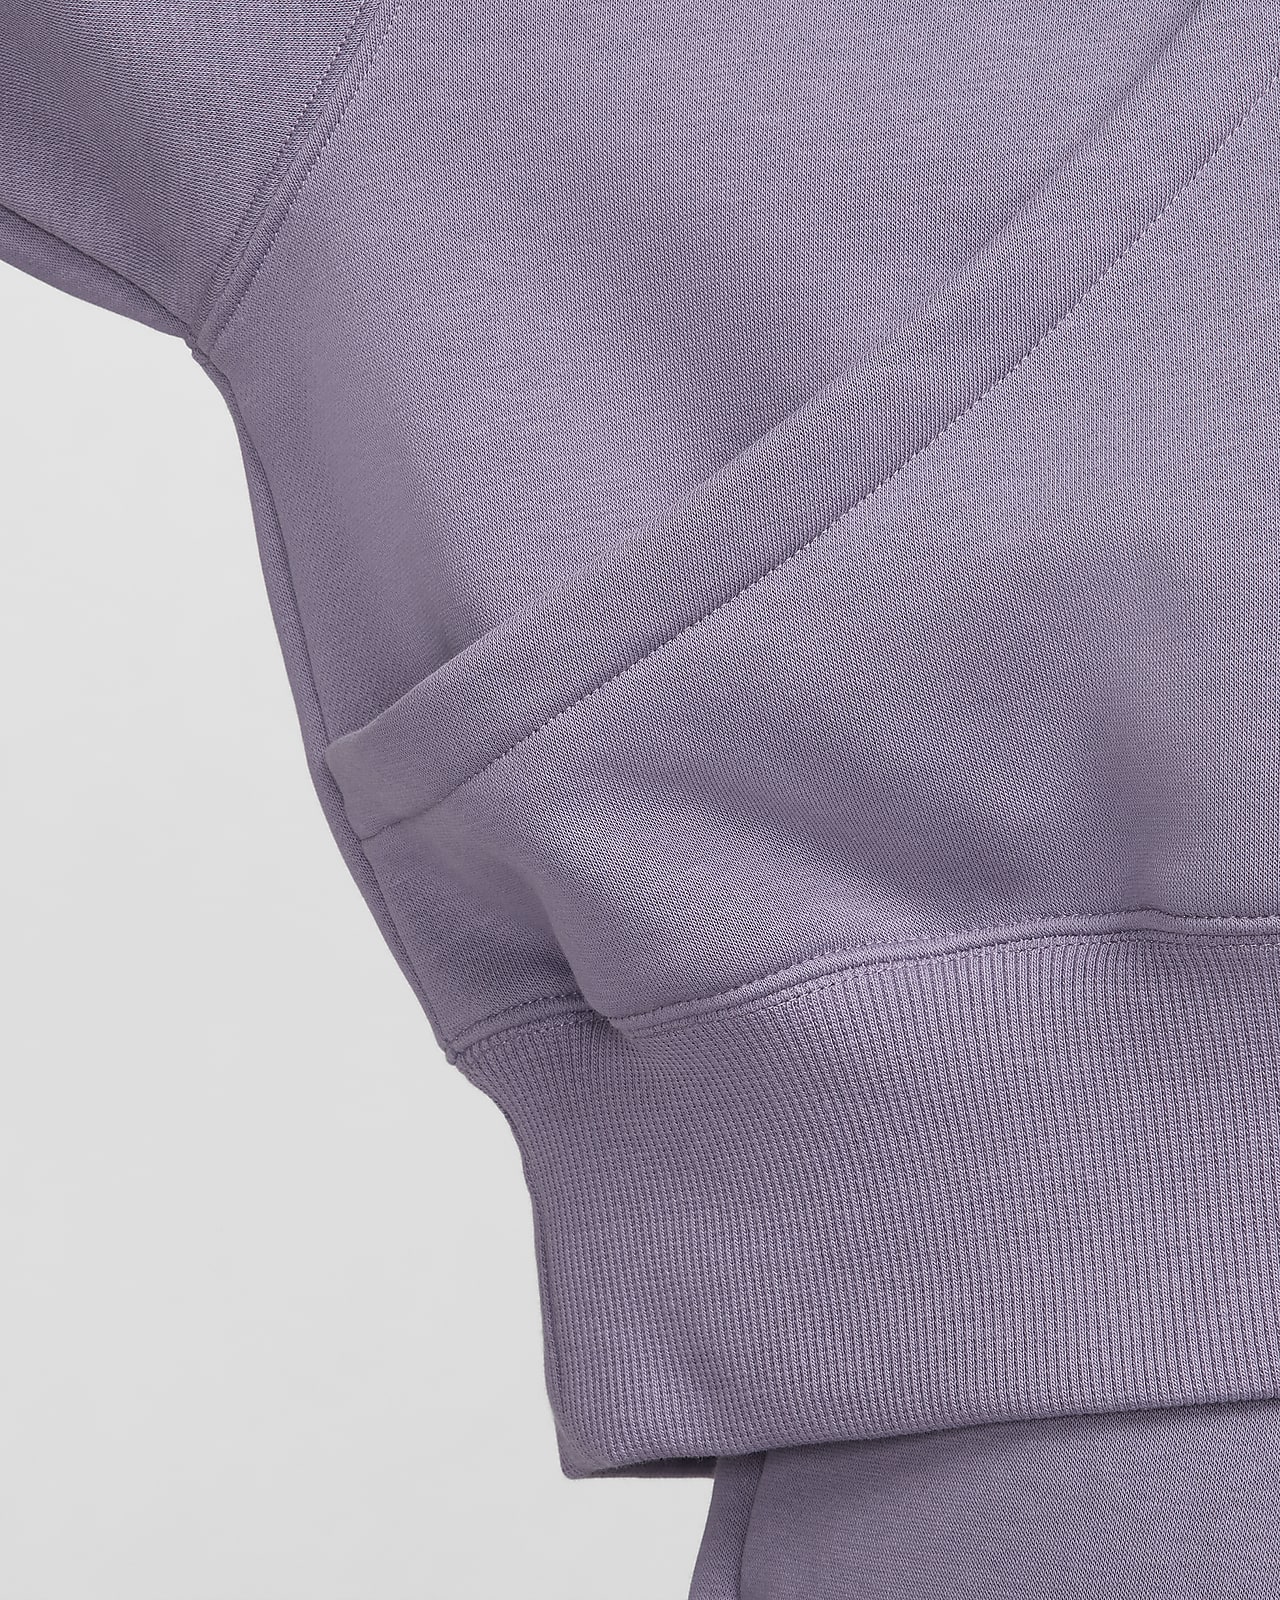 Women's Sportswear Phoenix Fleece Over-Oversized Pullover Hoodie, Nike